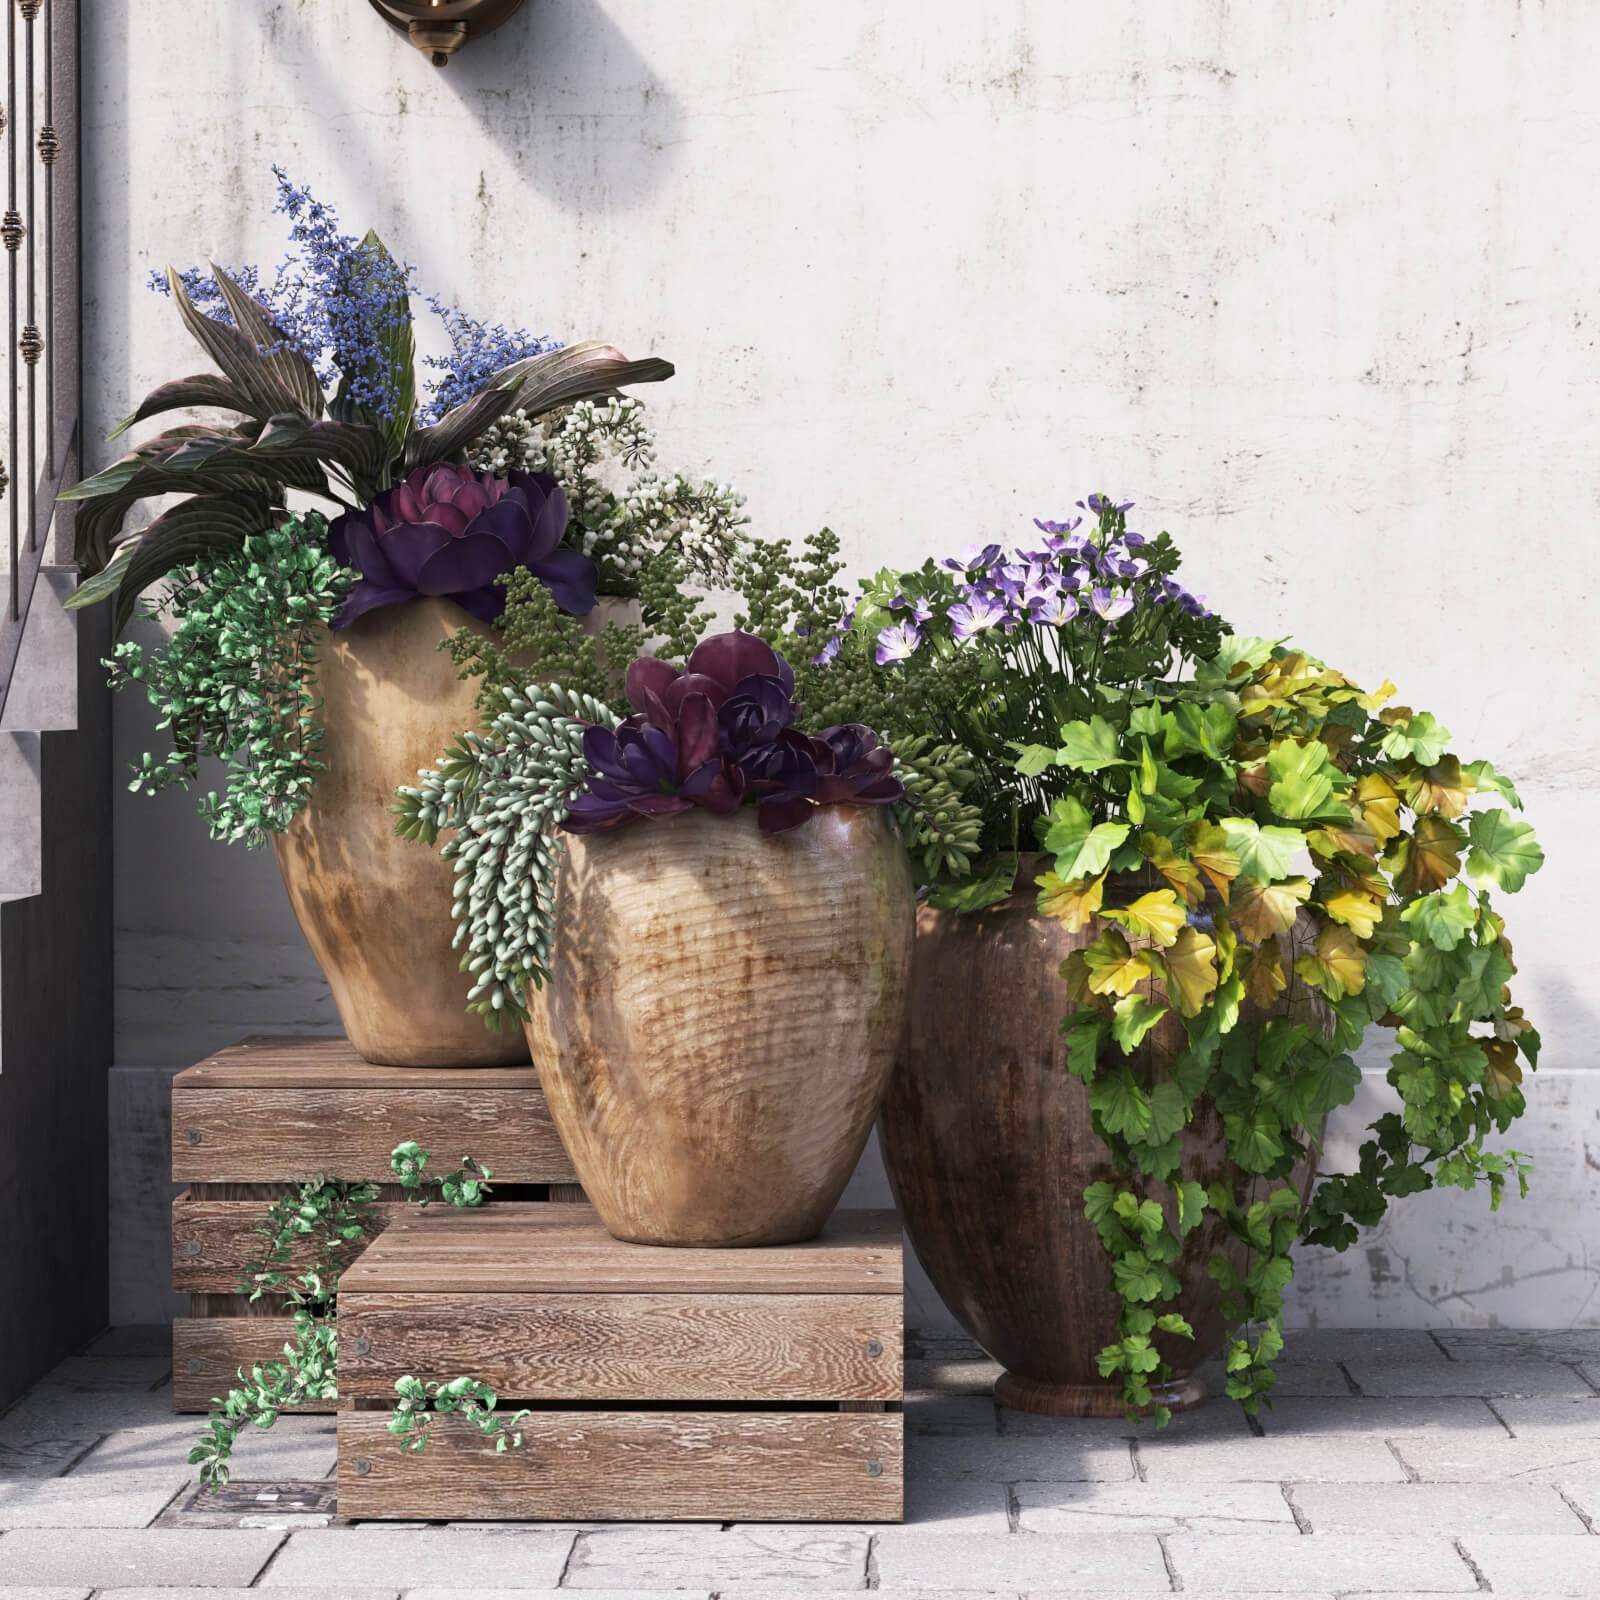 Summer flowers in pots